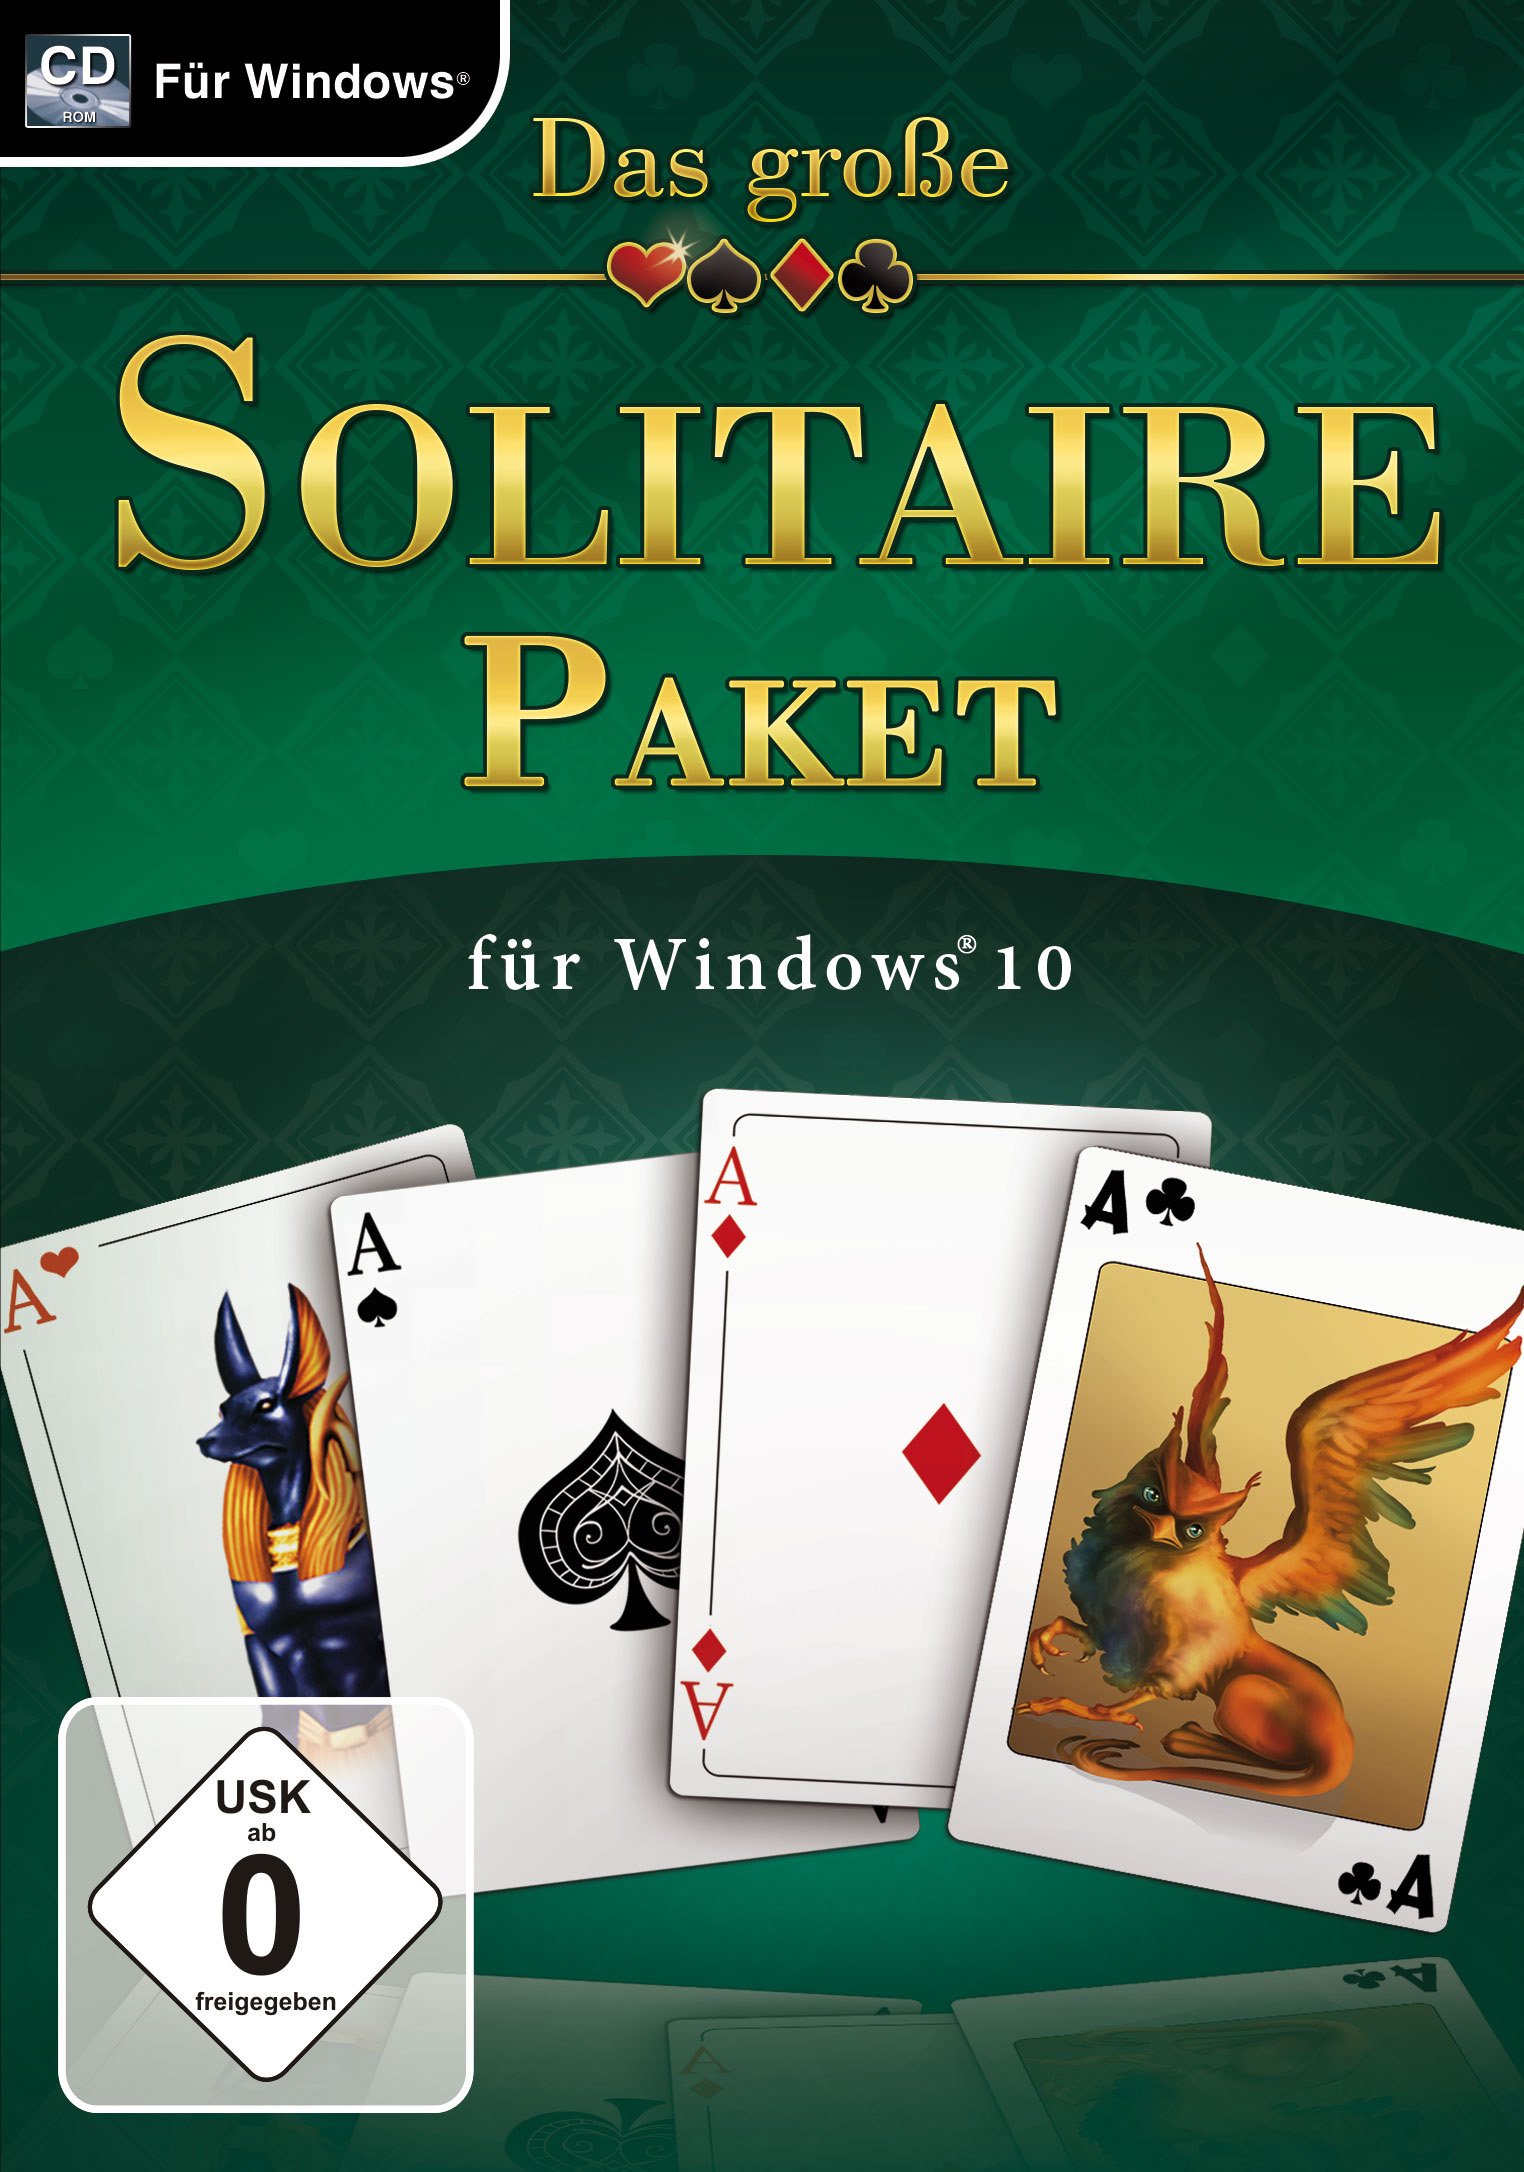 Das-groe-Solitaire-Paket-fr-Windows-10-PC